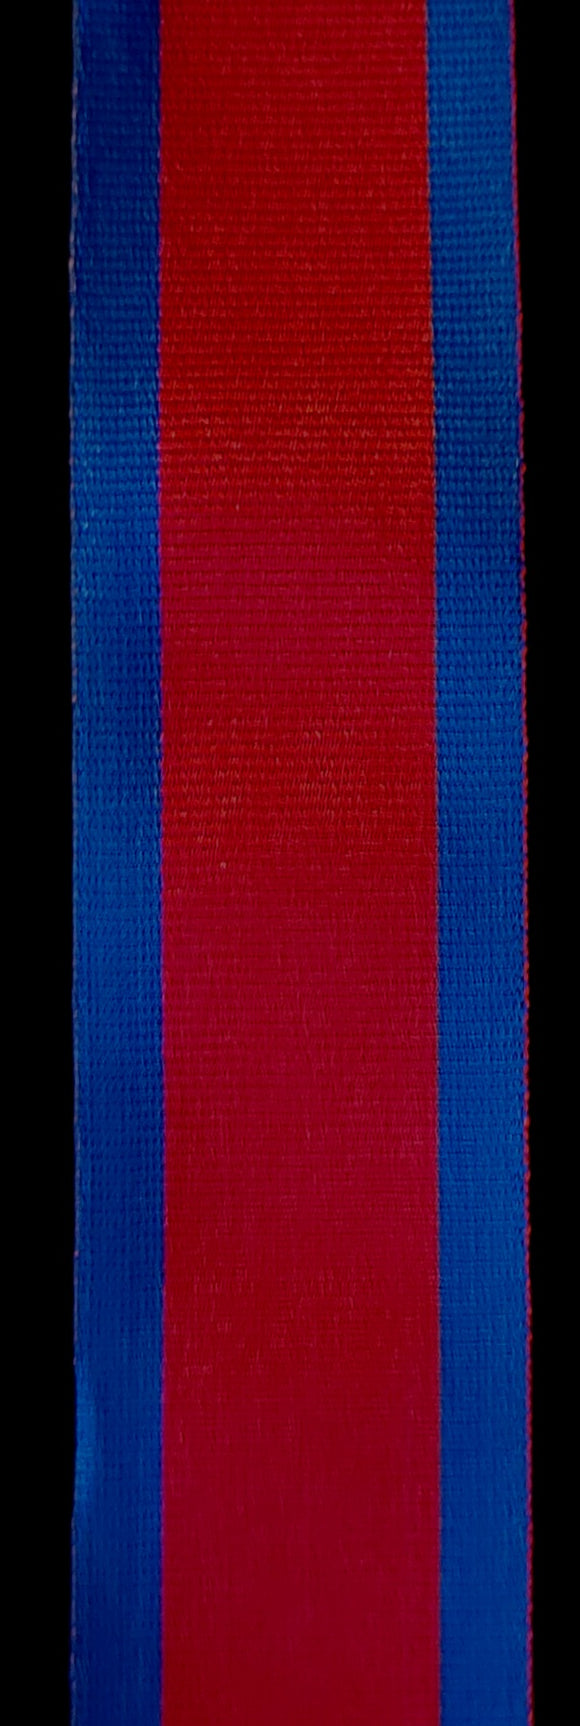 Ribbon, Distinguished Service Order